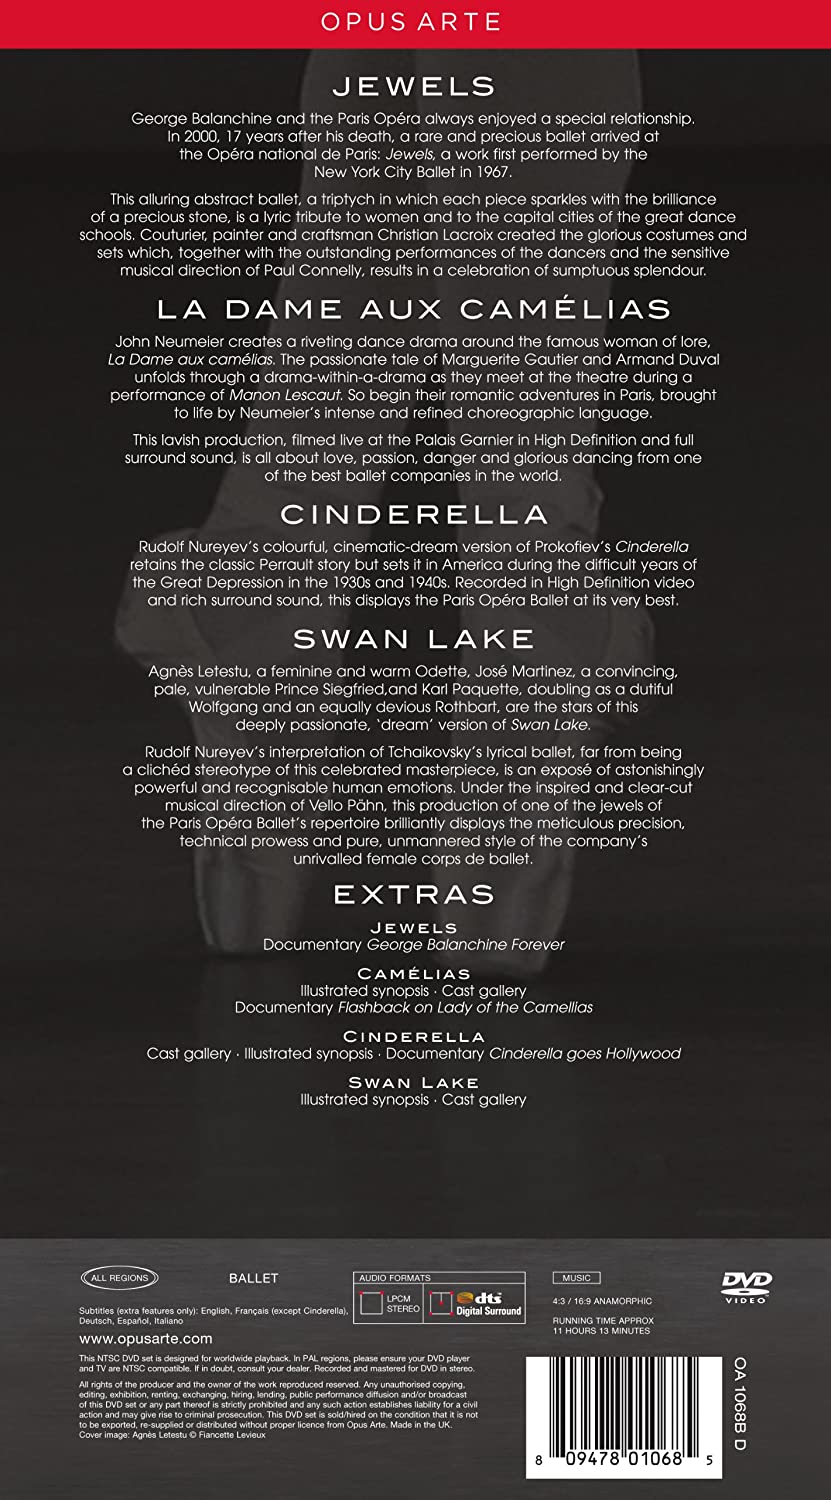 Opera Ballet Box Set (6 DVD) Jewels, La Dame aux camélias, Cinderella, Swan Lake - slide-1